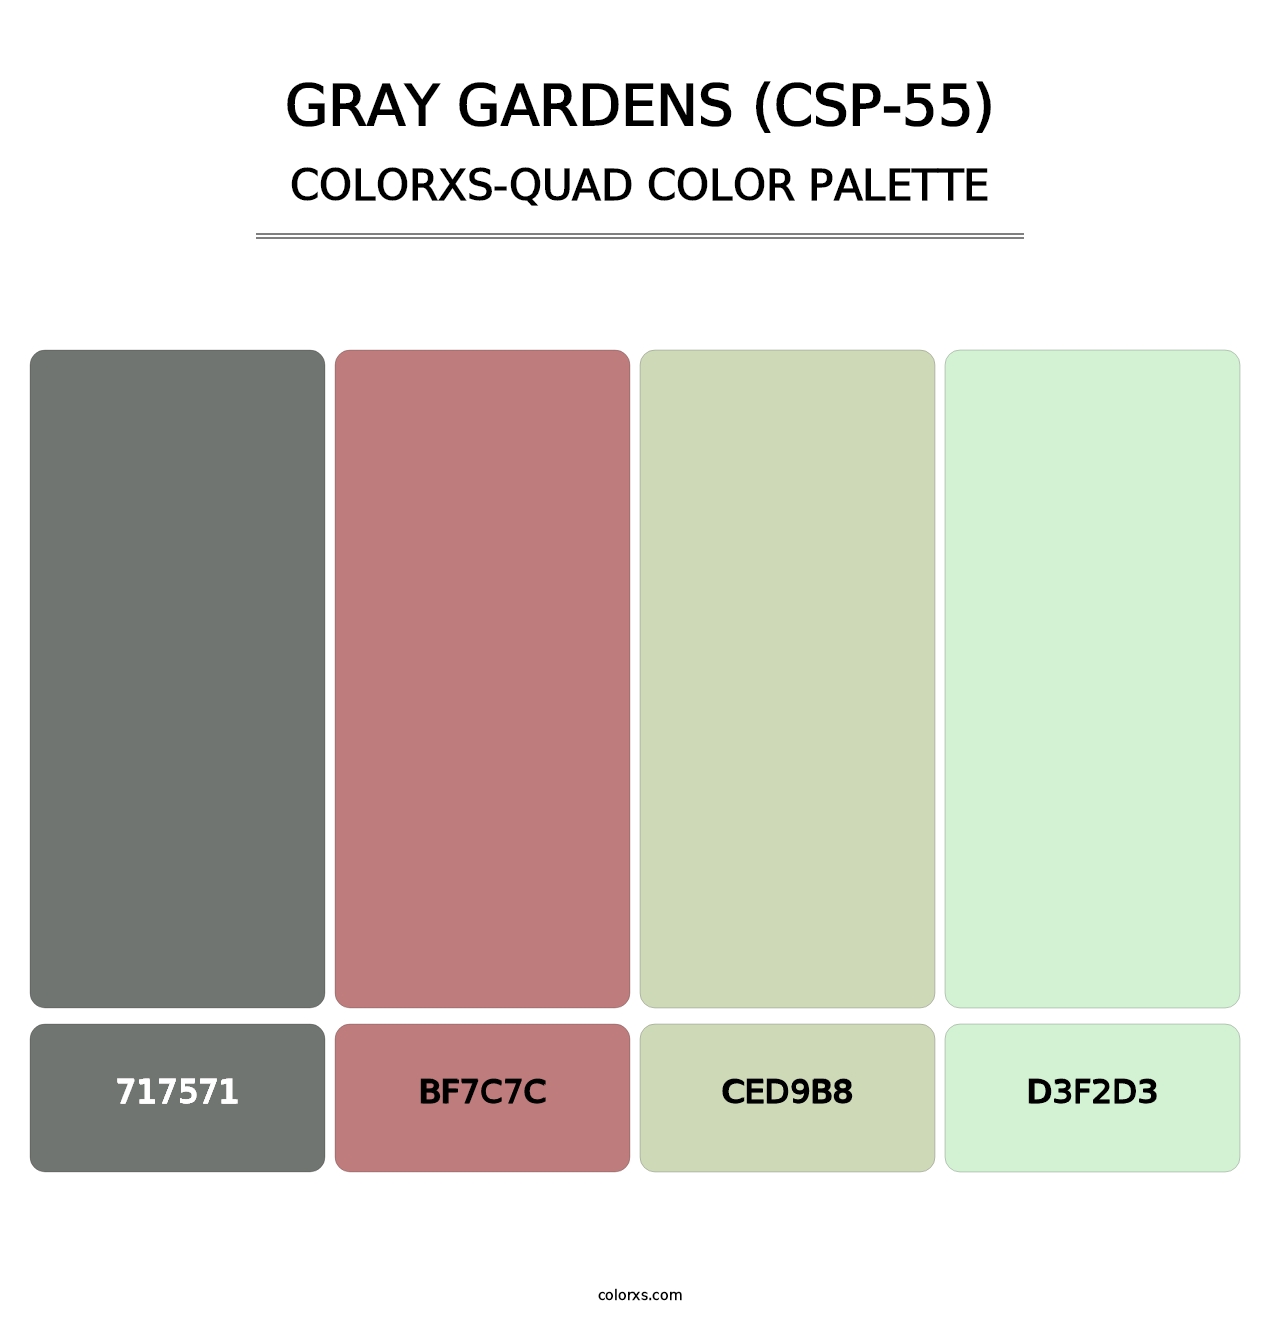 Gray Gardens (CSP-55) - Colorxs Quad Palette